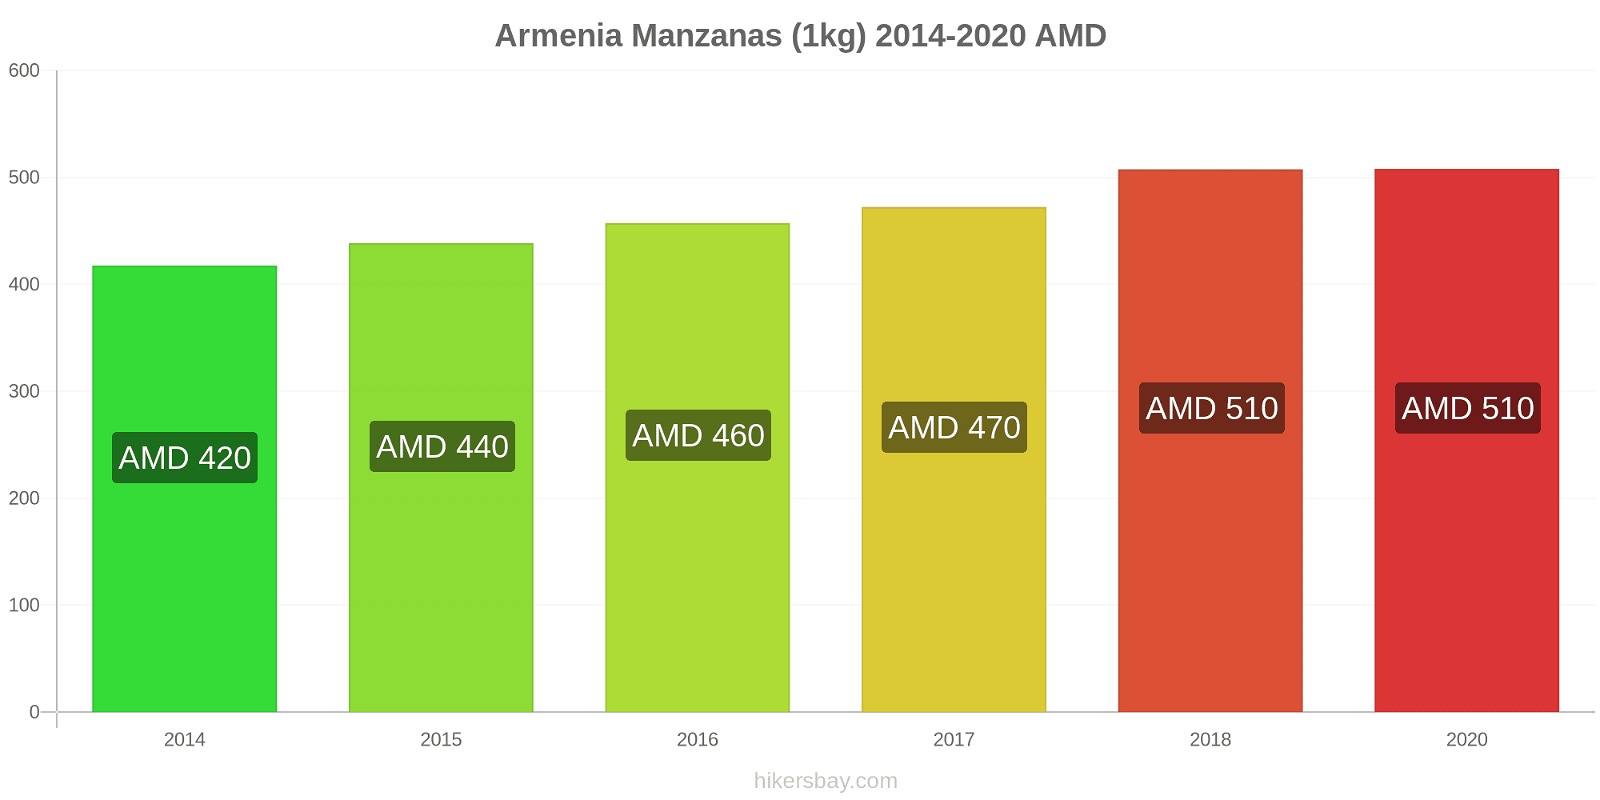 Armenia cambios de precios Manzanas (1kg) hikersbay.com